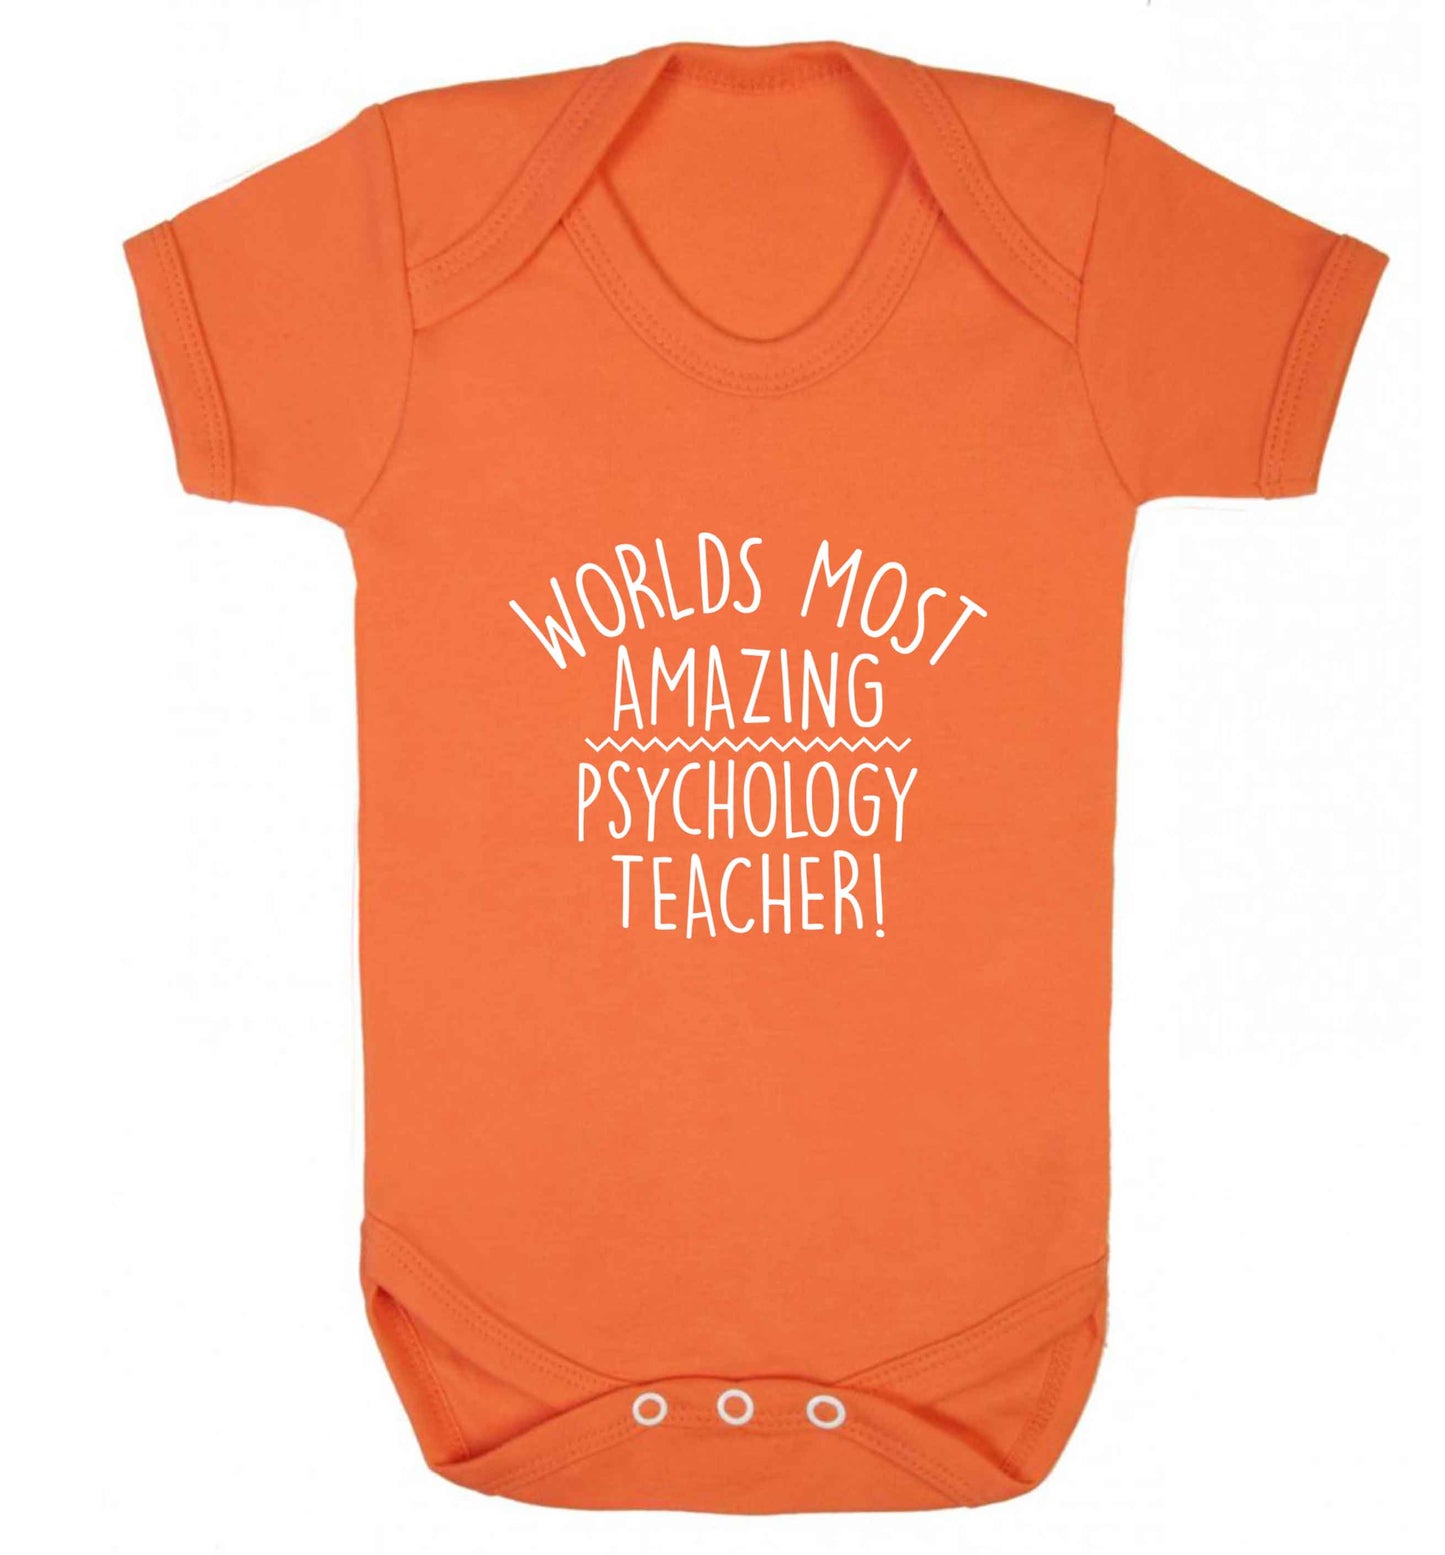 Worlds most amazing psychology teacher baby vest orange 18-24 months